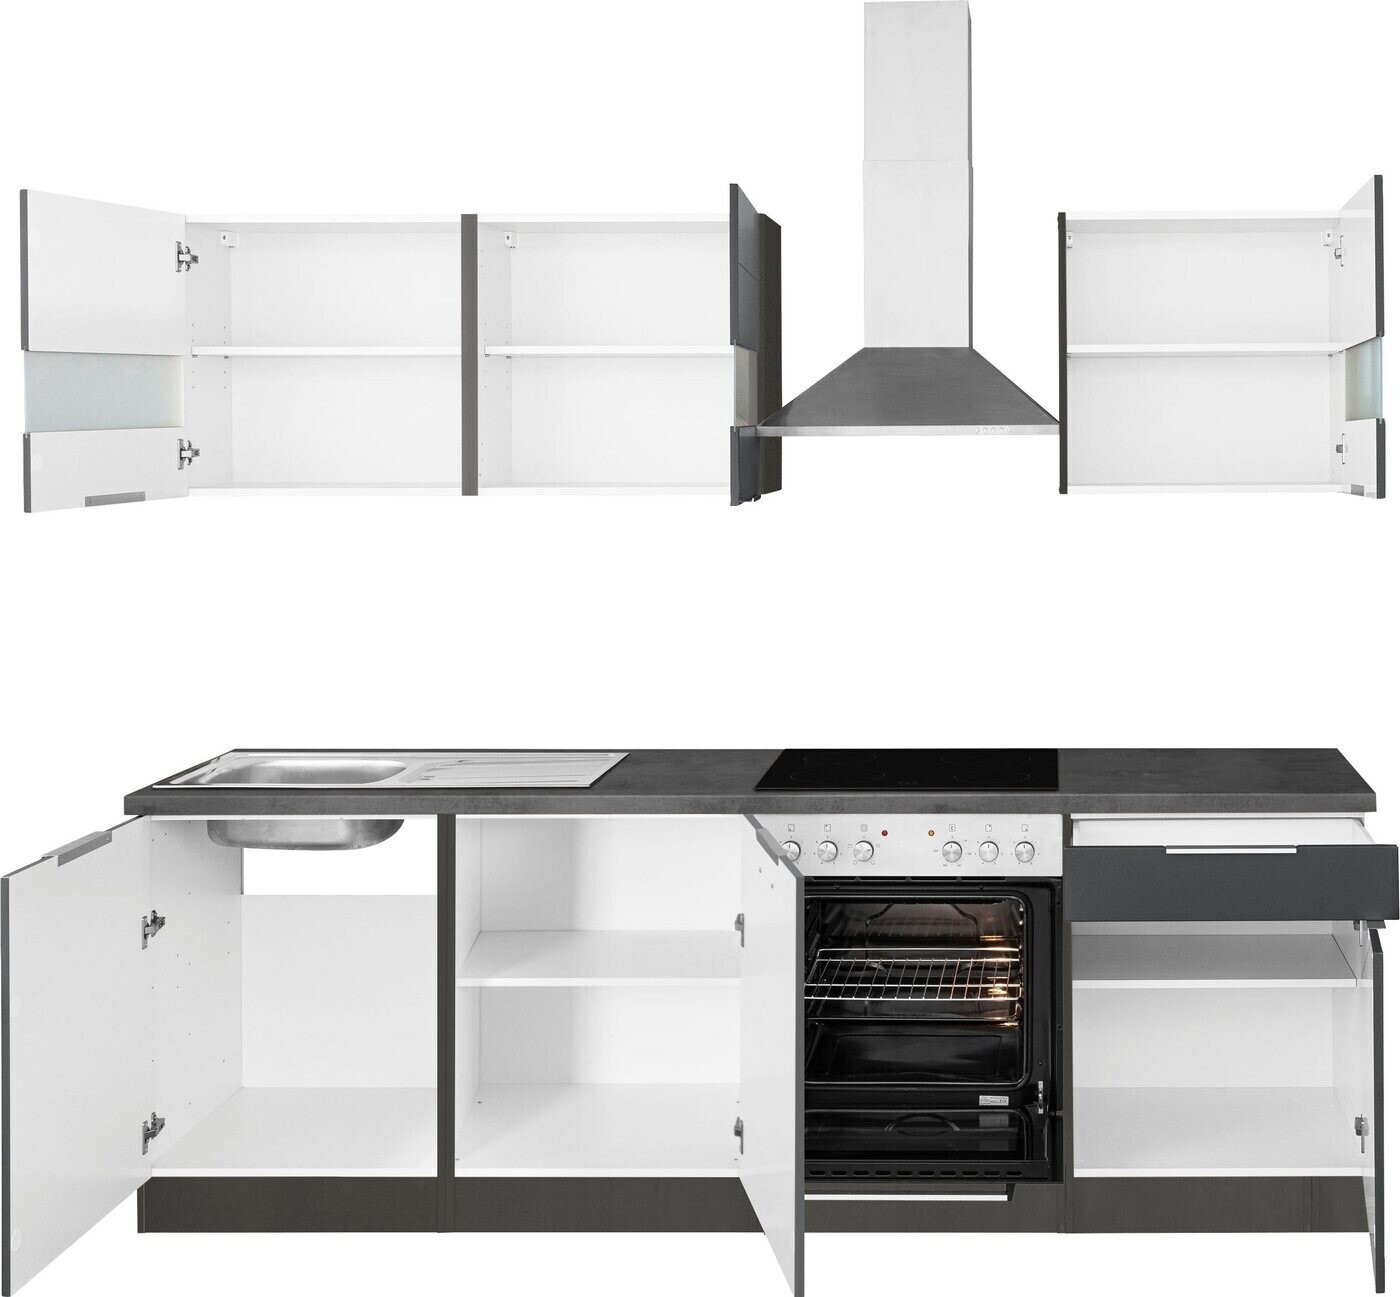 Held Möbel Komplettküchen-Sets Luhe | cm weiß bei 1.130,49 240 grafit oxid € Preisvergleich stone ab matt